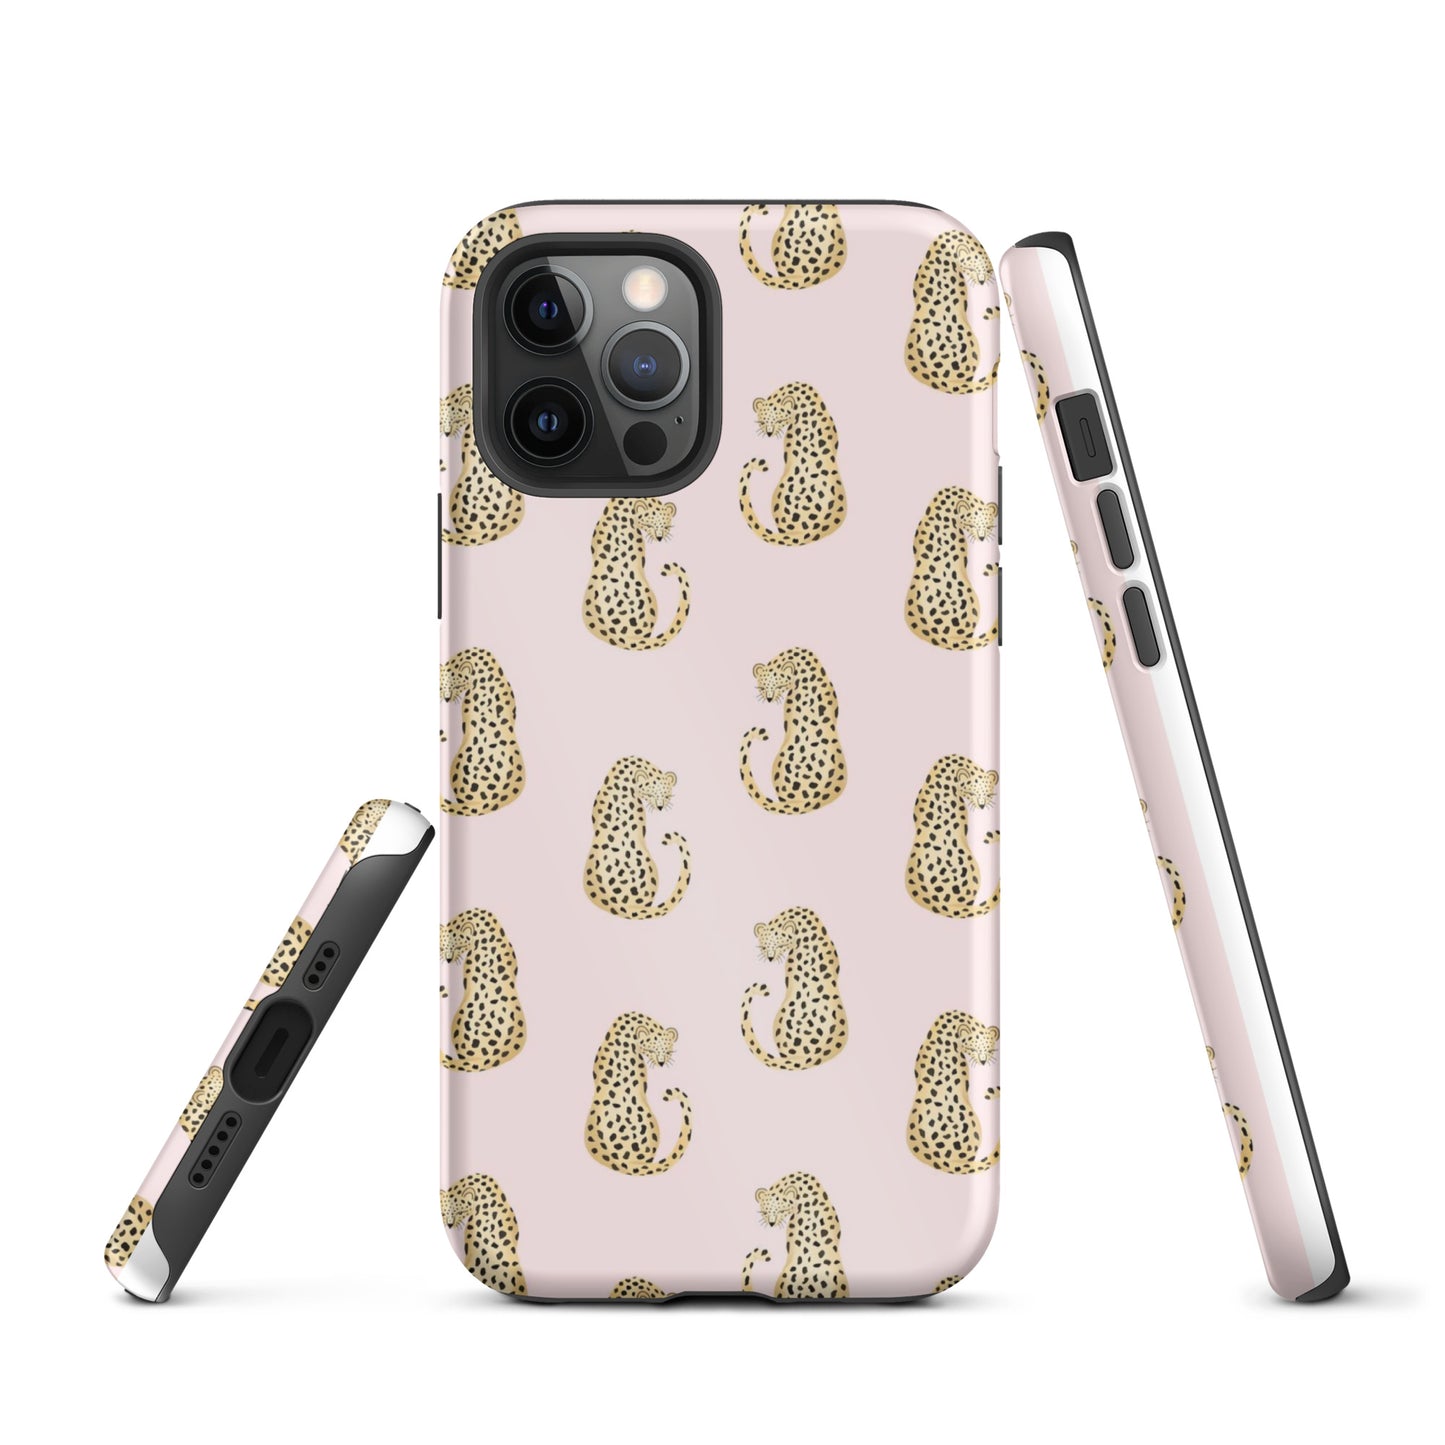 Leopard Tough iPhone Case